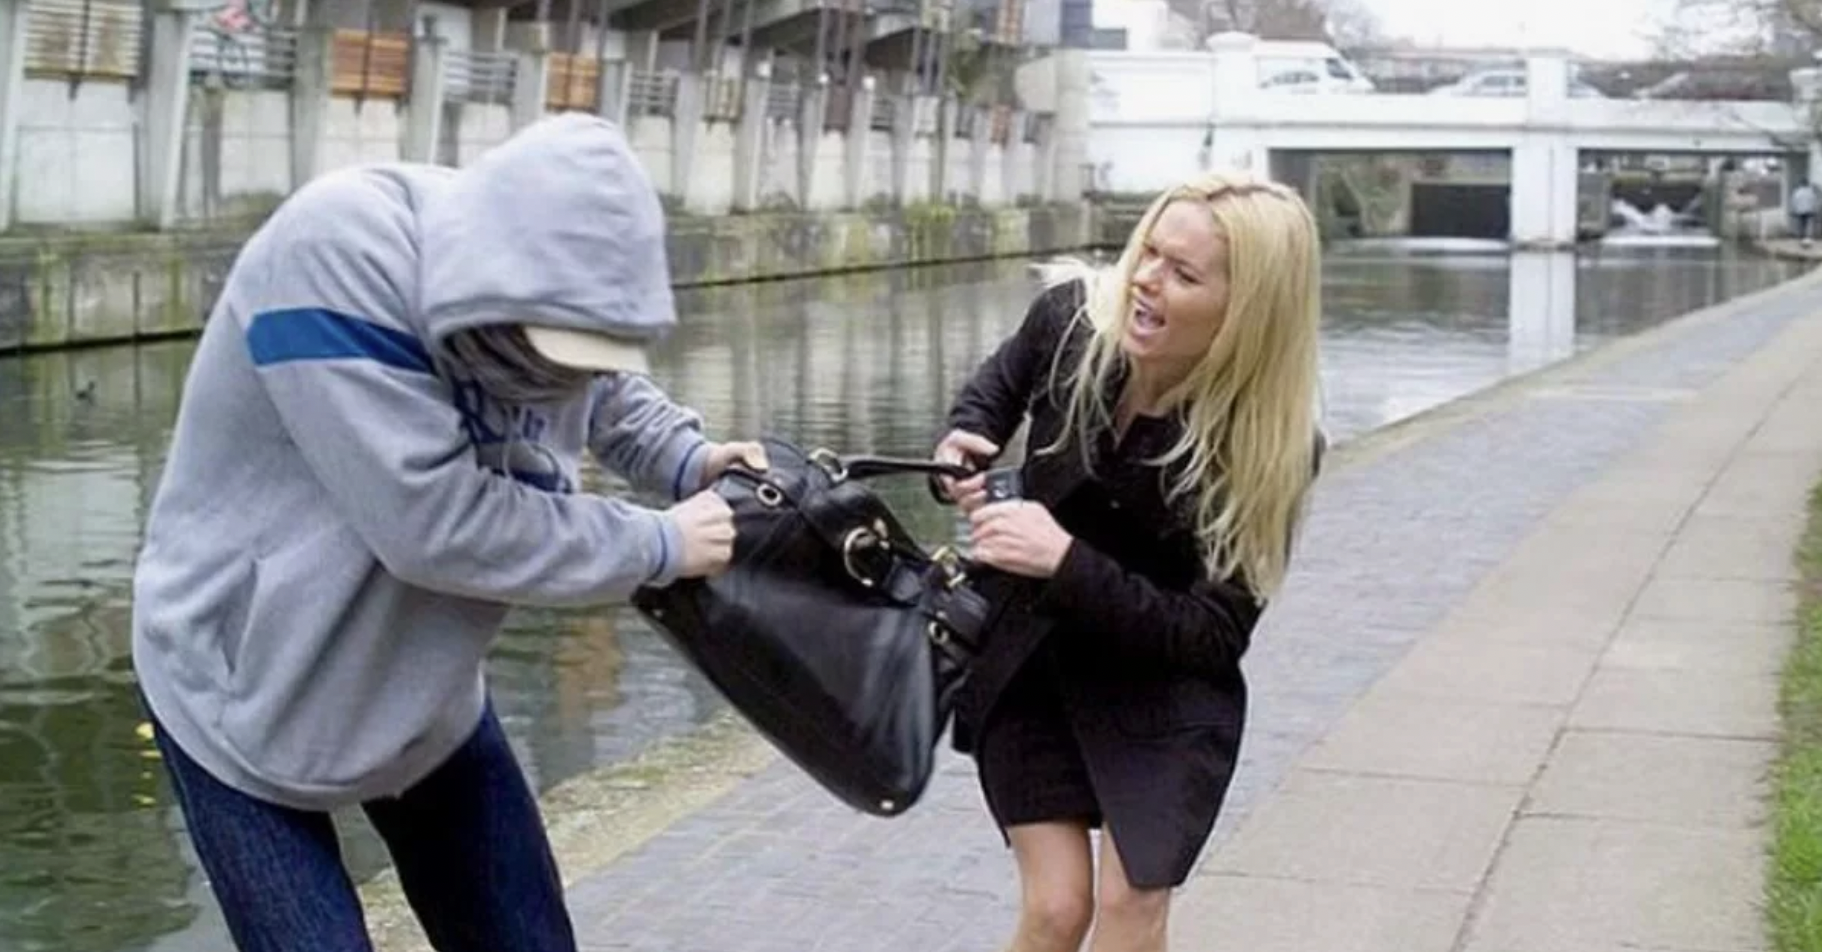 Straßendieb, der versucht, die Handtasche einer Frau zu stehlen | Quelle: Shutterstock